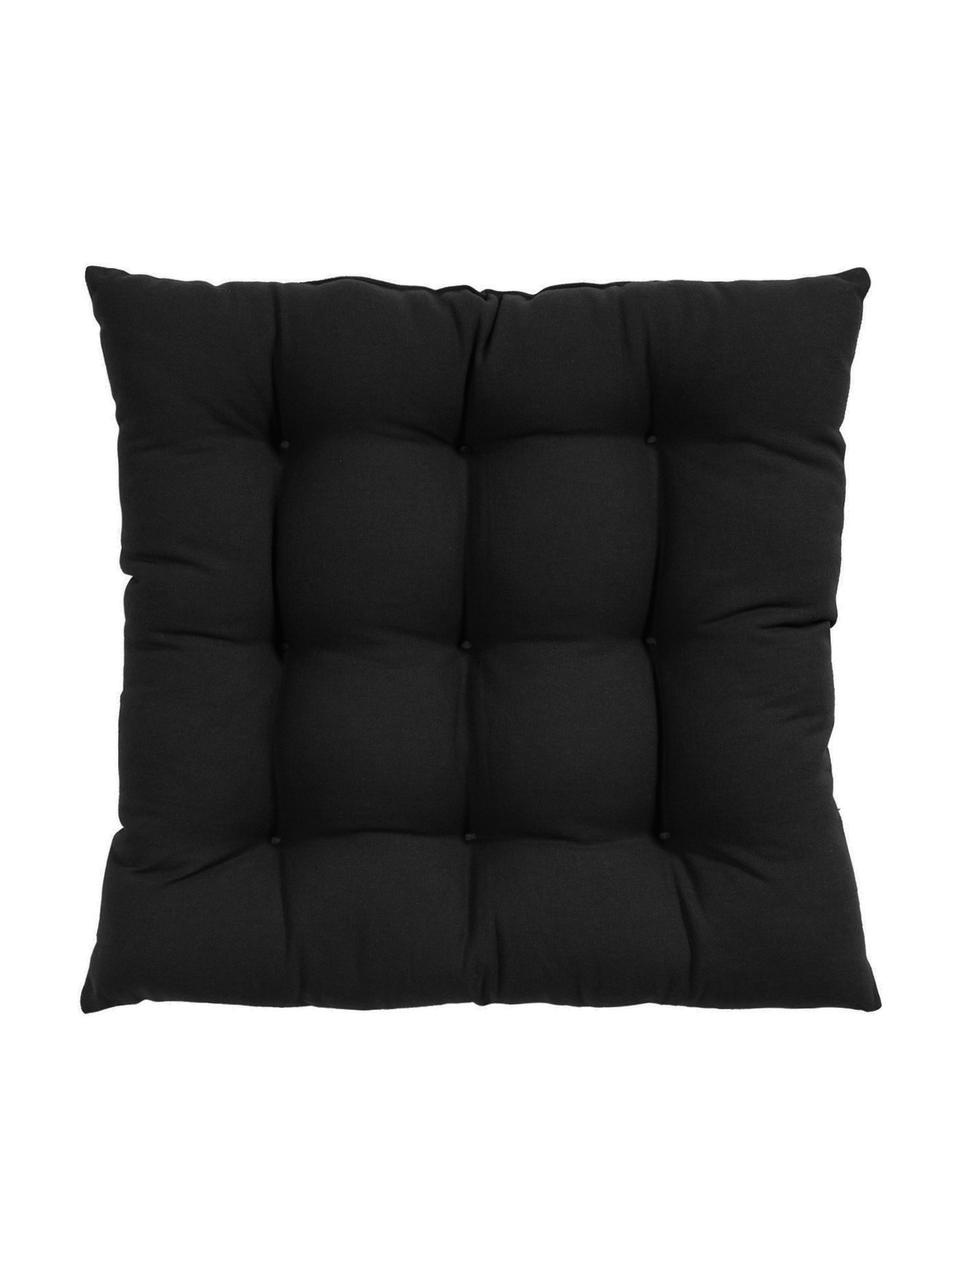 Cuscino sedia in cotone nero Ava, Rivestimento: 100% cotone, Nero, Larg. 40 x Lung. 40 cm